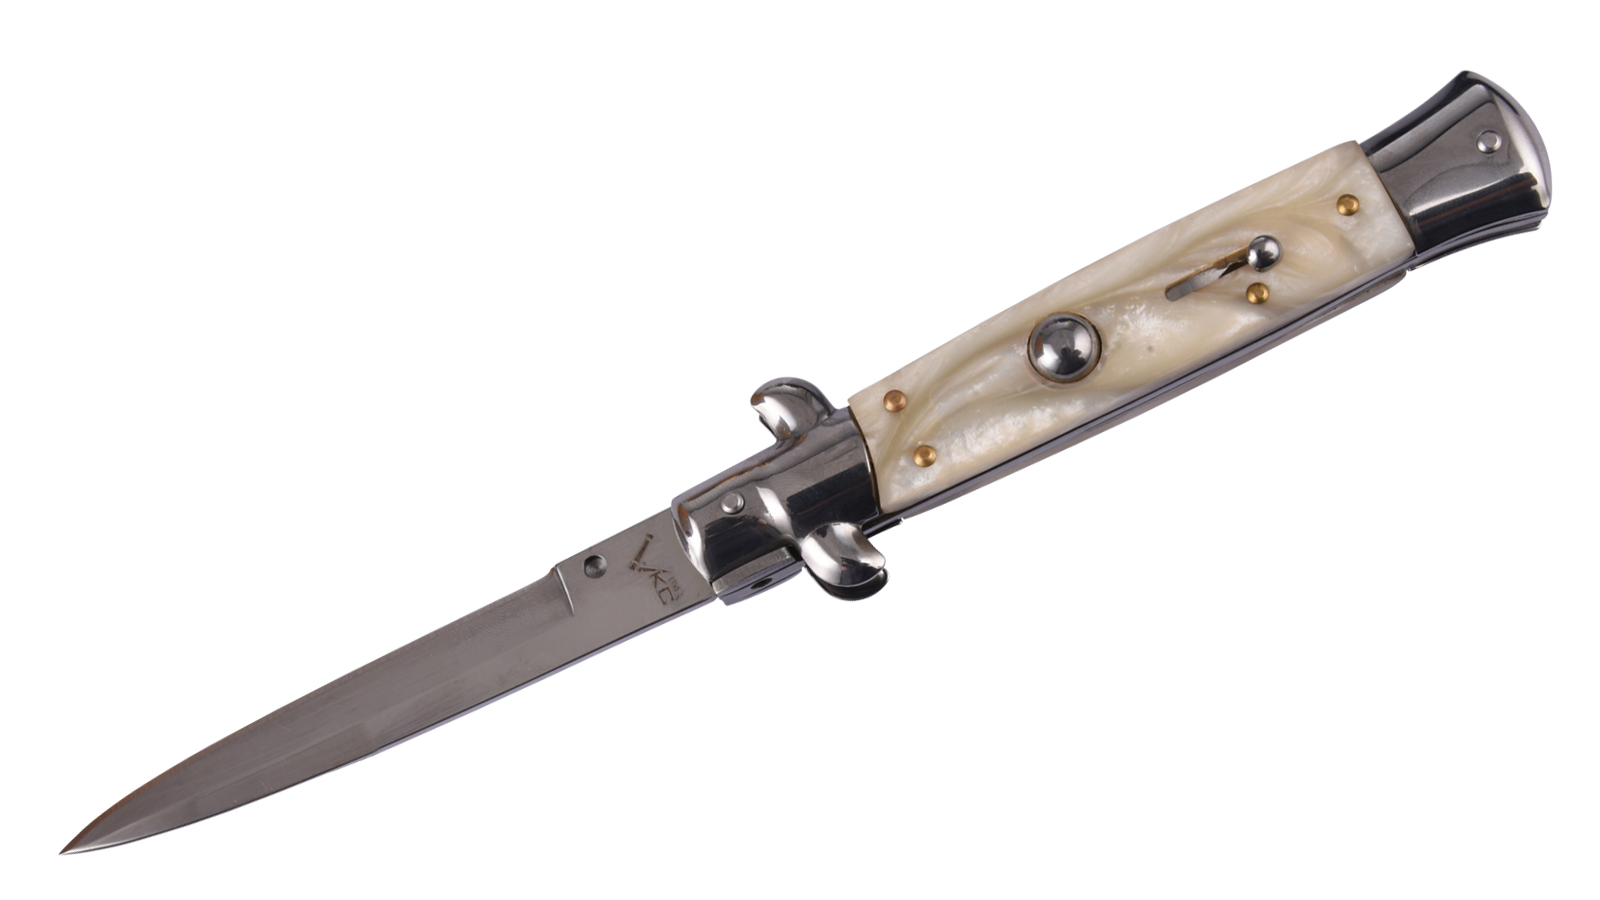 Купить выкидной нож AKC Italy выгоднее в военторге Военпро